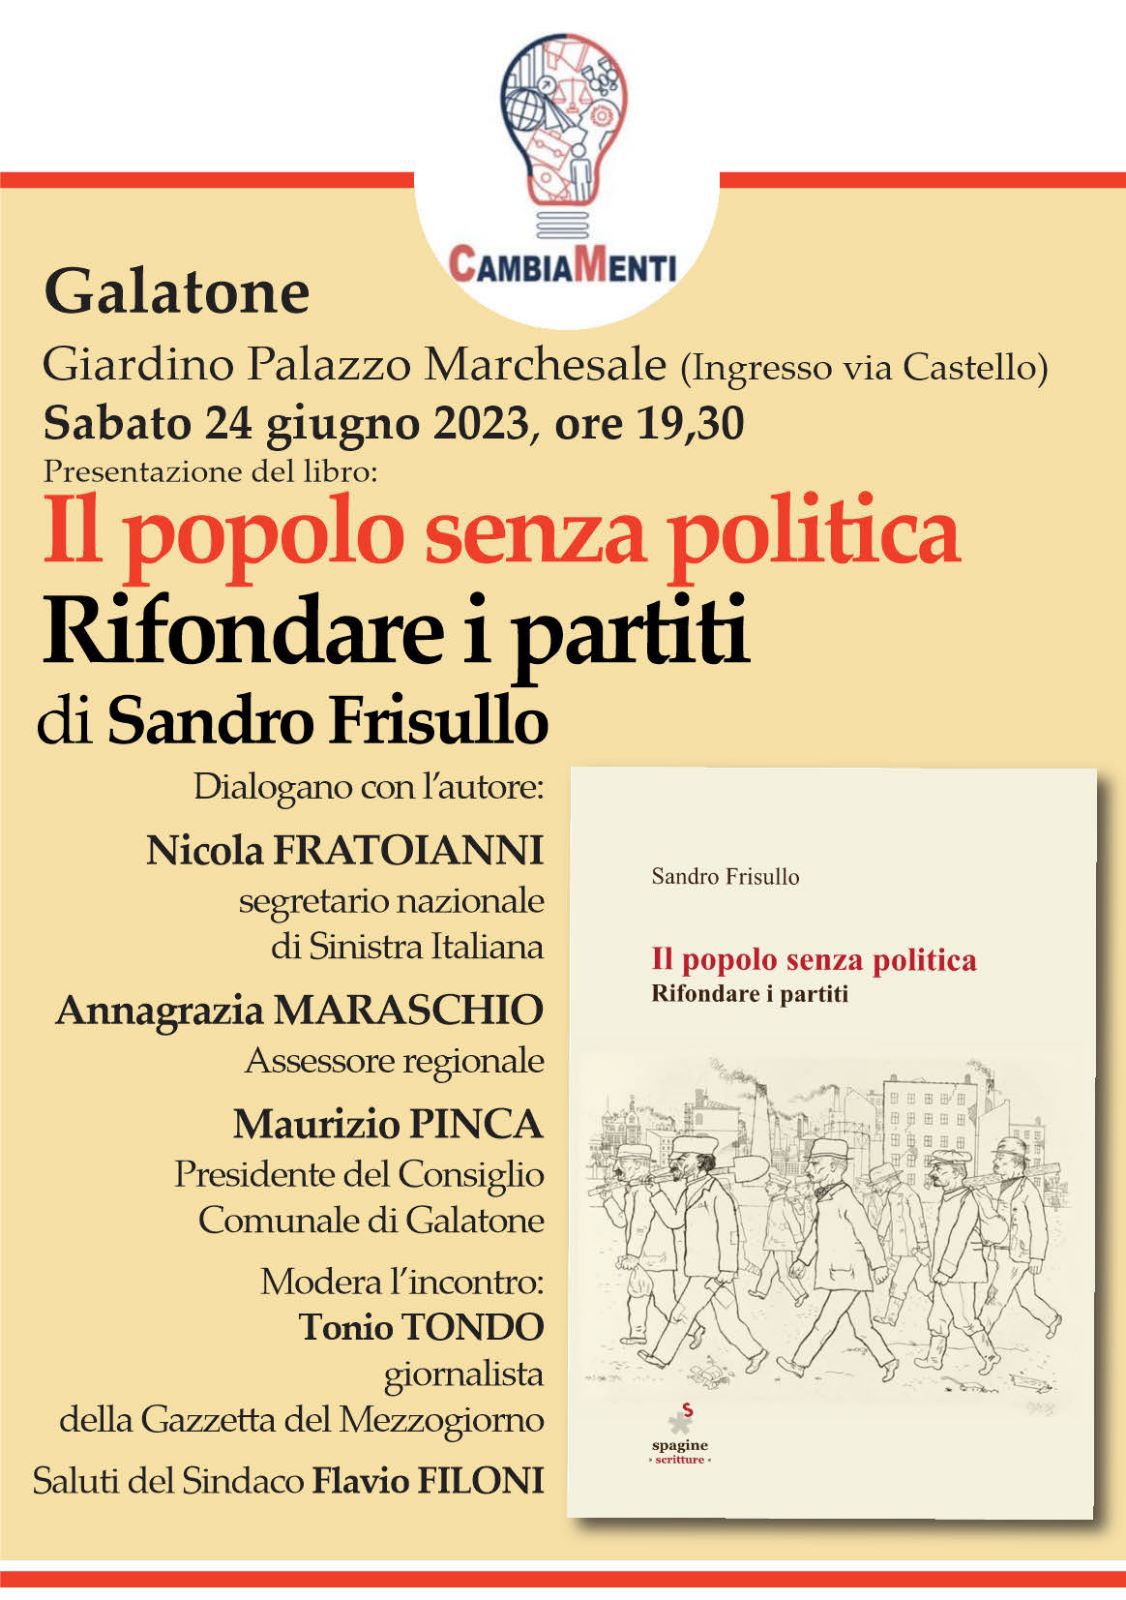 Frisullo, Fratoianni ed altri a Galatone per parlare della crisi della politica.